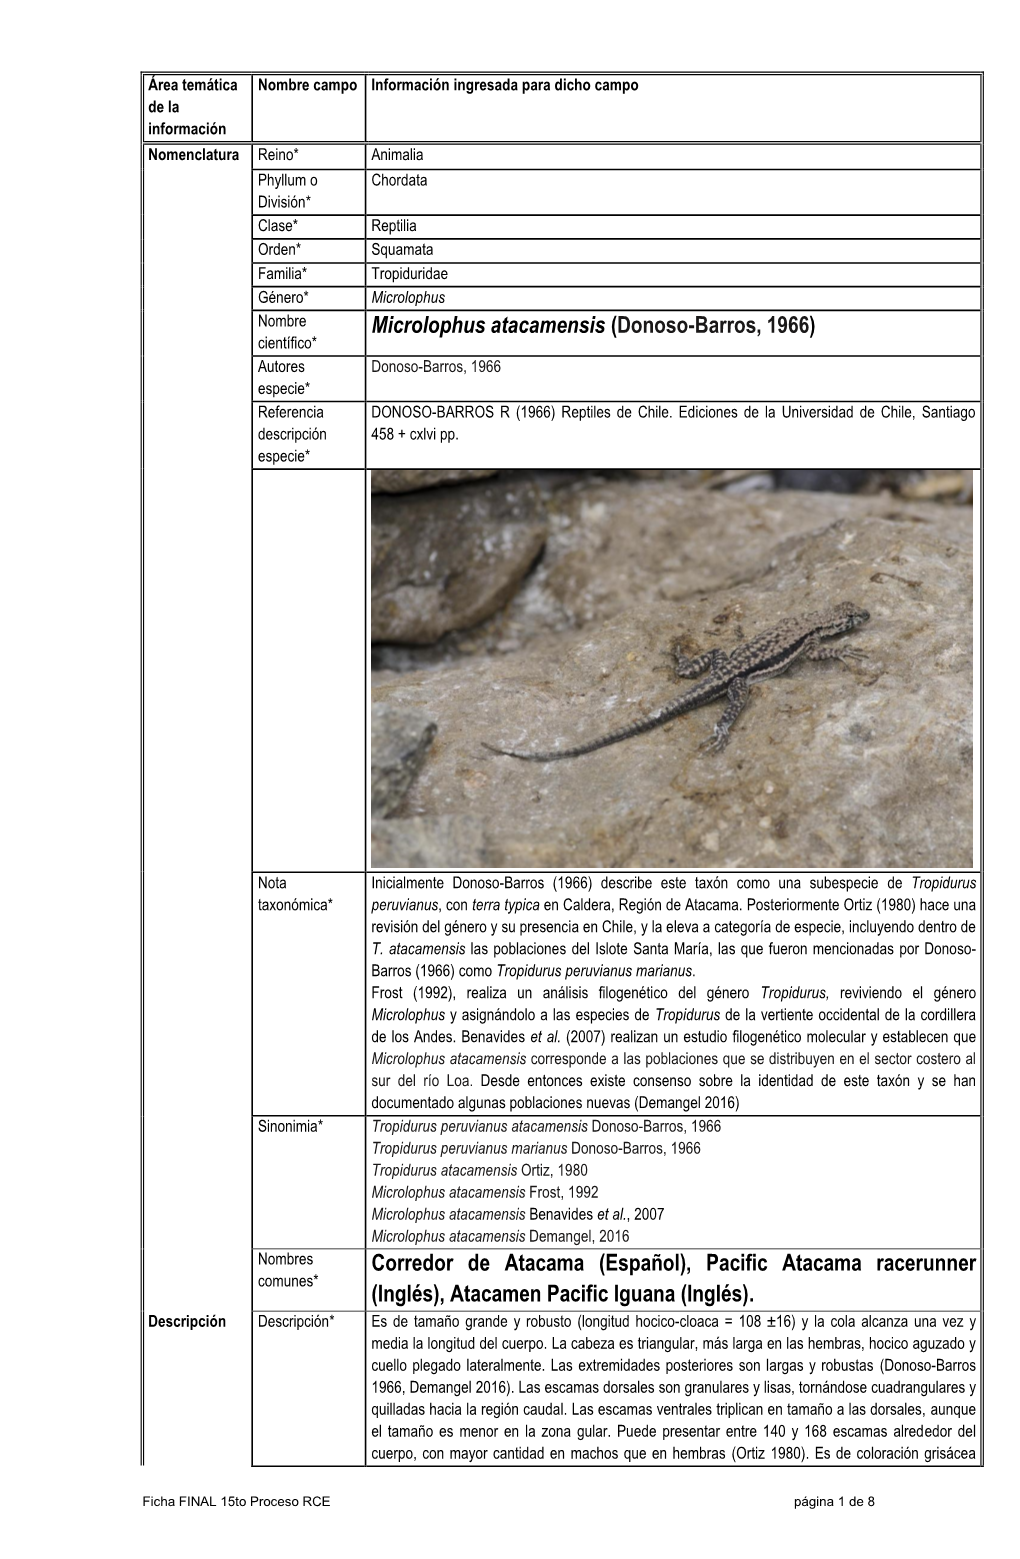 Microlophus Atacamensis (Donoso-Barros, 1966) Científico* Autores Donoso-Barros, 1966 Especie* Referencia DONOSO-BARROS R (1966) Reptiles De Chile